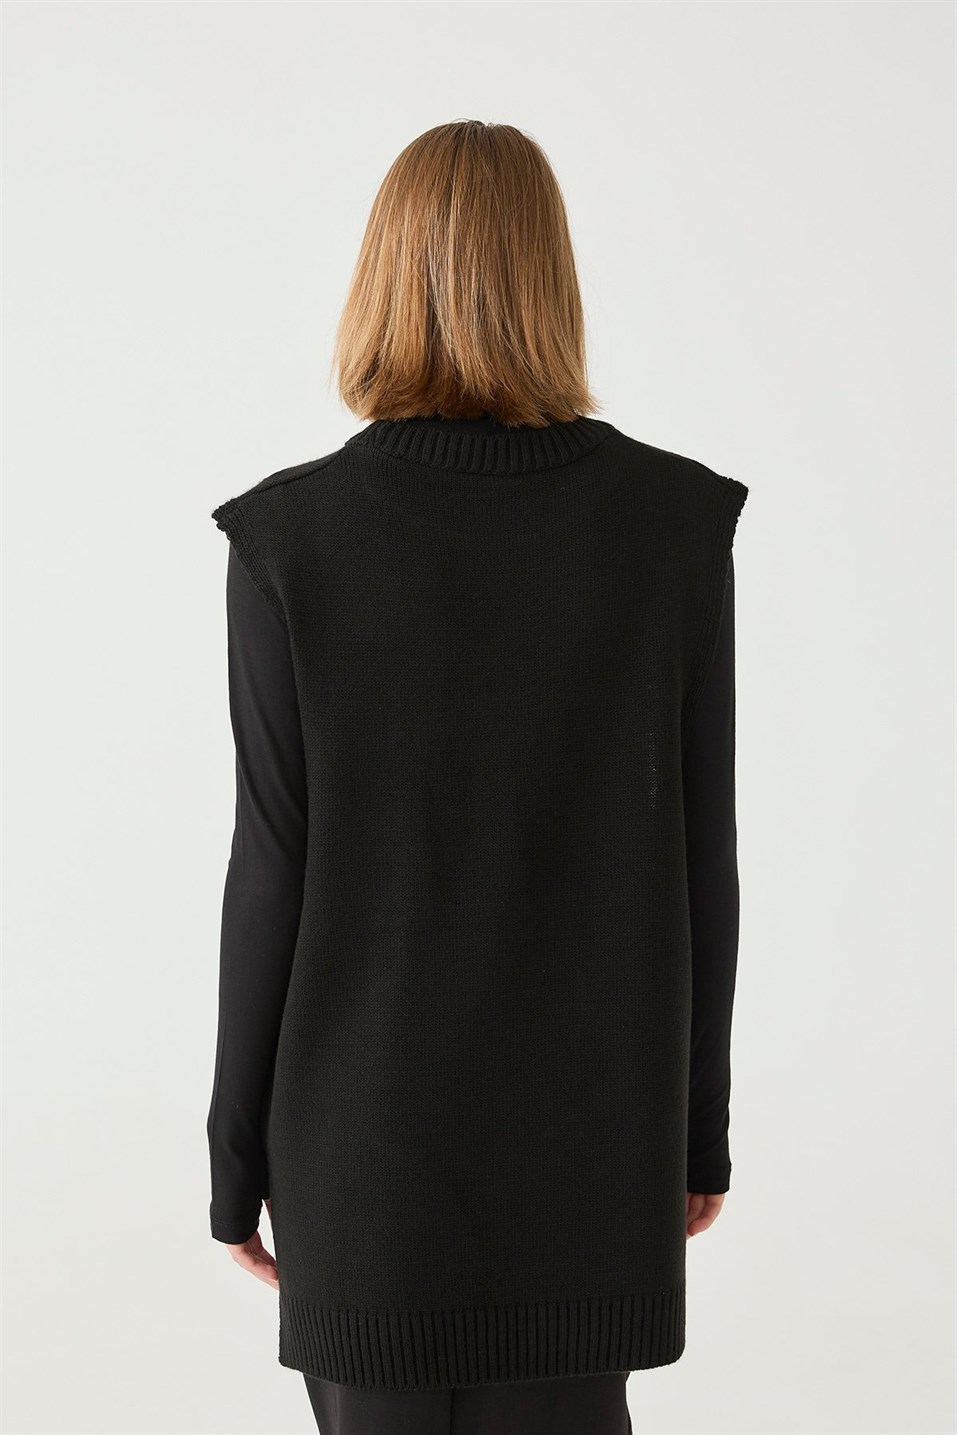 Black Slit Detailed Knitwear Sweater